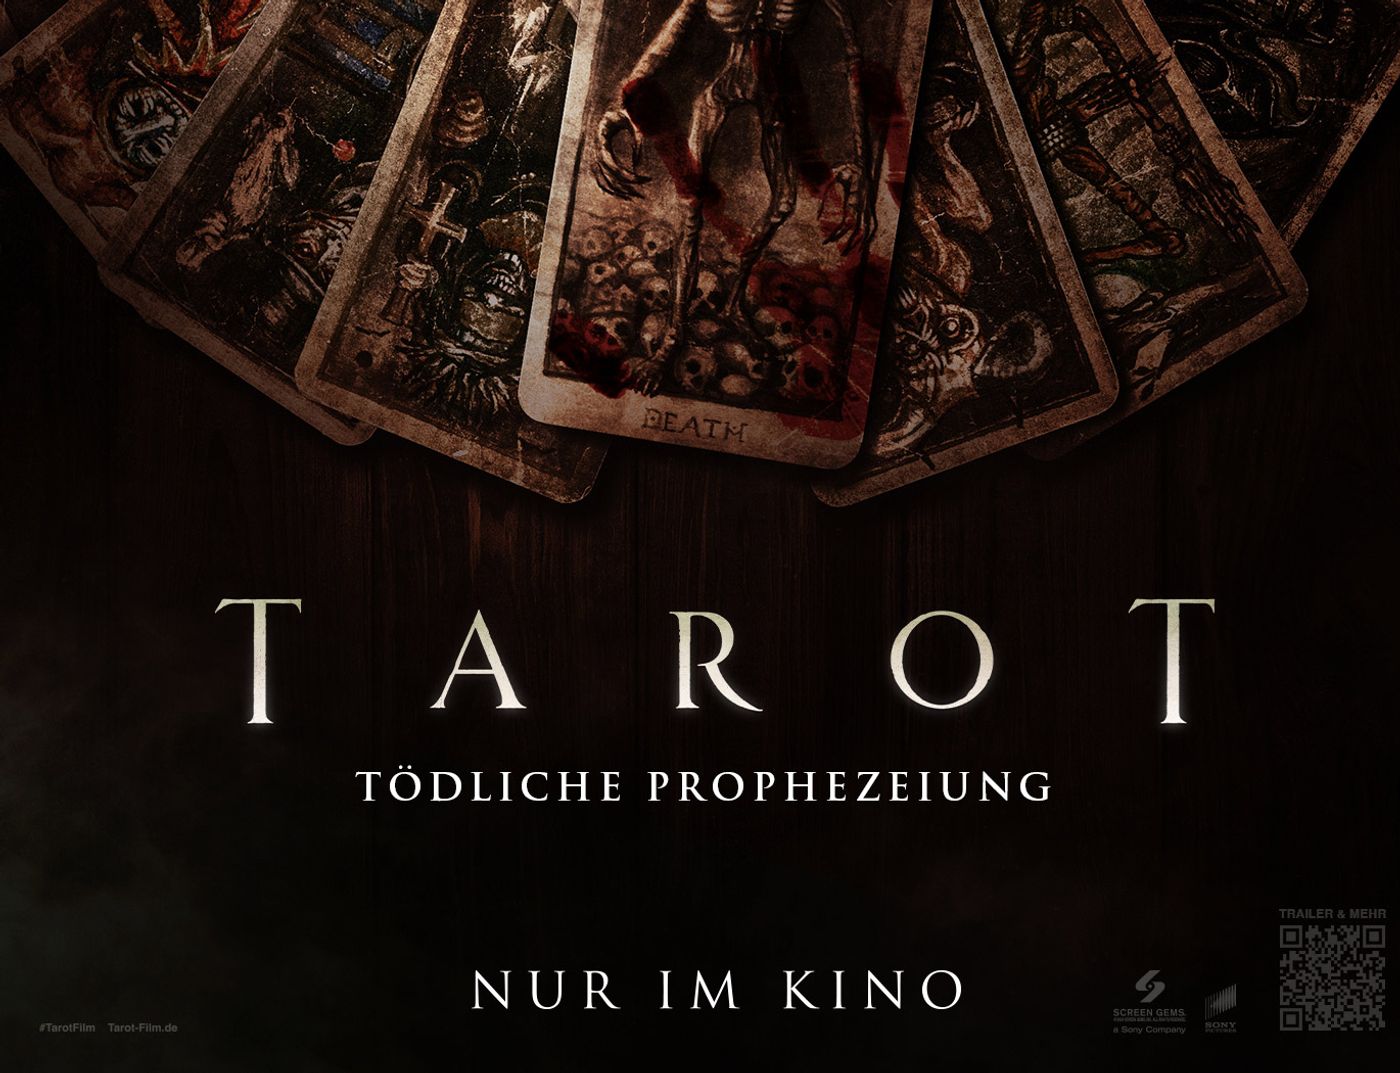 "Tarot - Tödliche Prophezeiung"